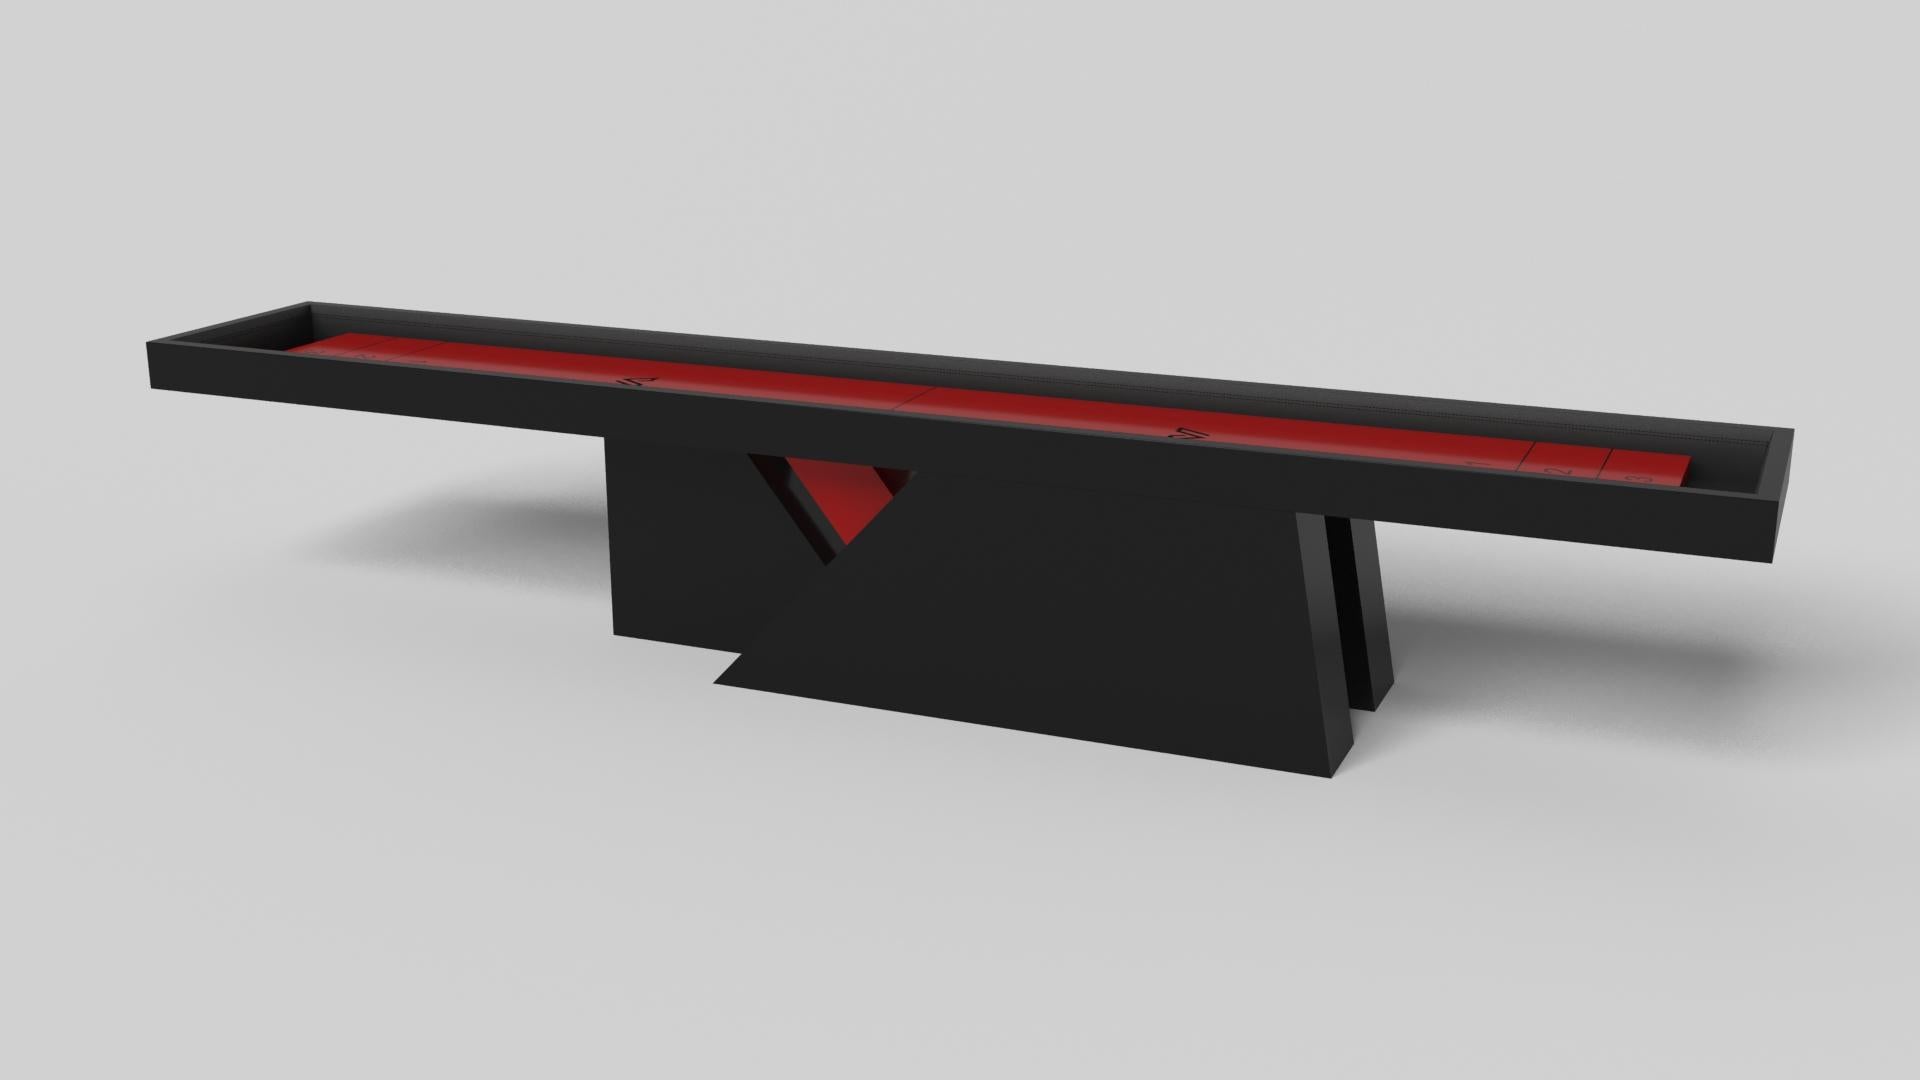 Une base asymétrique crée une silhouette flottante, faisant de la table de shuffleboard Stilt en chrome et noyer un ajout fascinant et contemporain à la maison moderne. Fabriquée en métal durable avec des accents en bois de noyer massif, cette